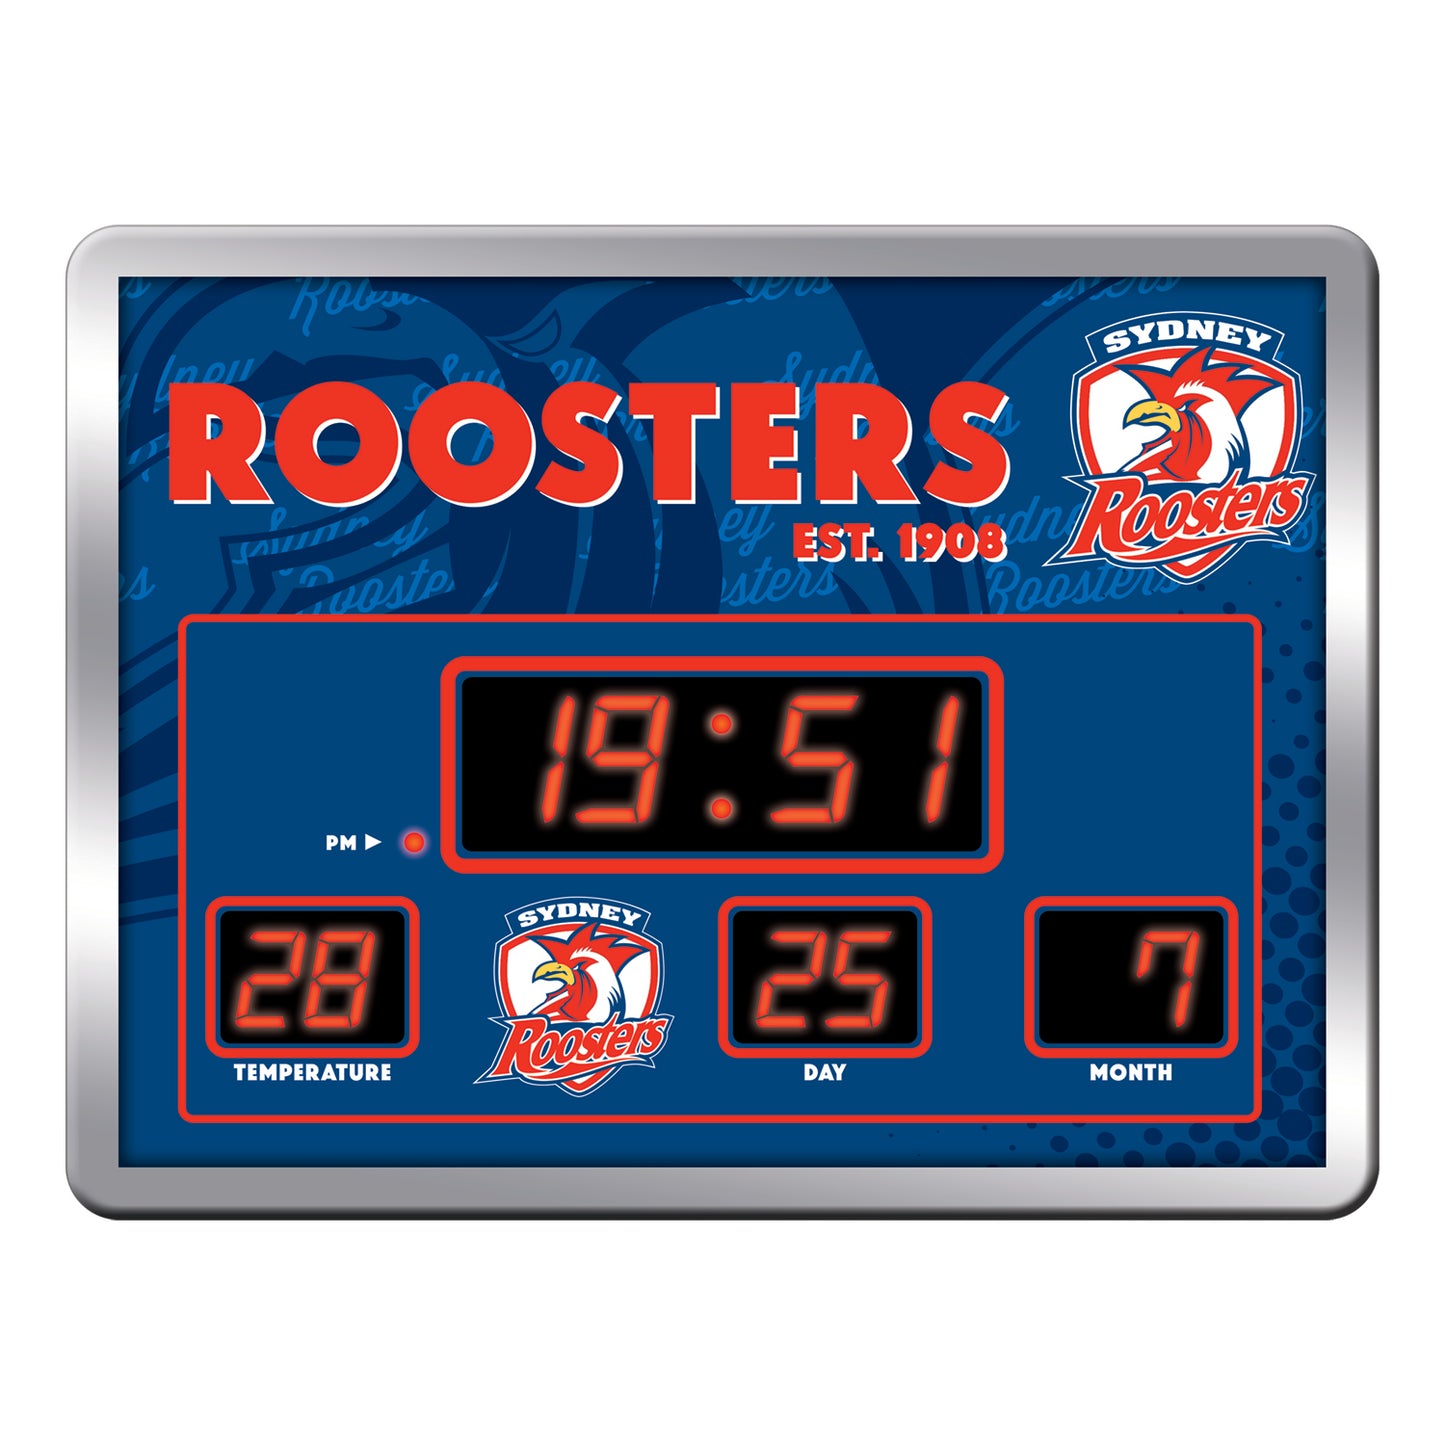 Sydney Roosters LED Scoreboard Clock